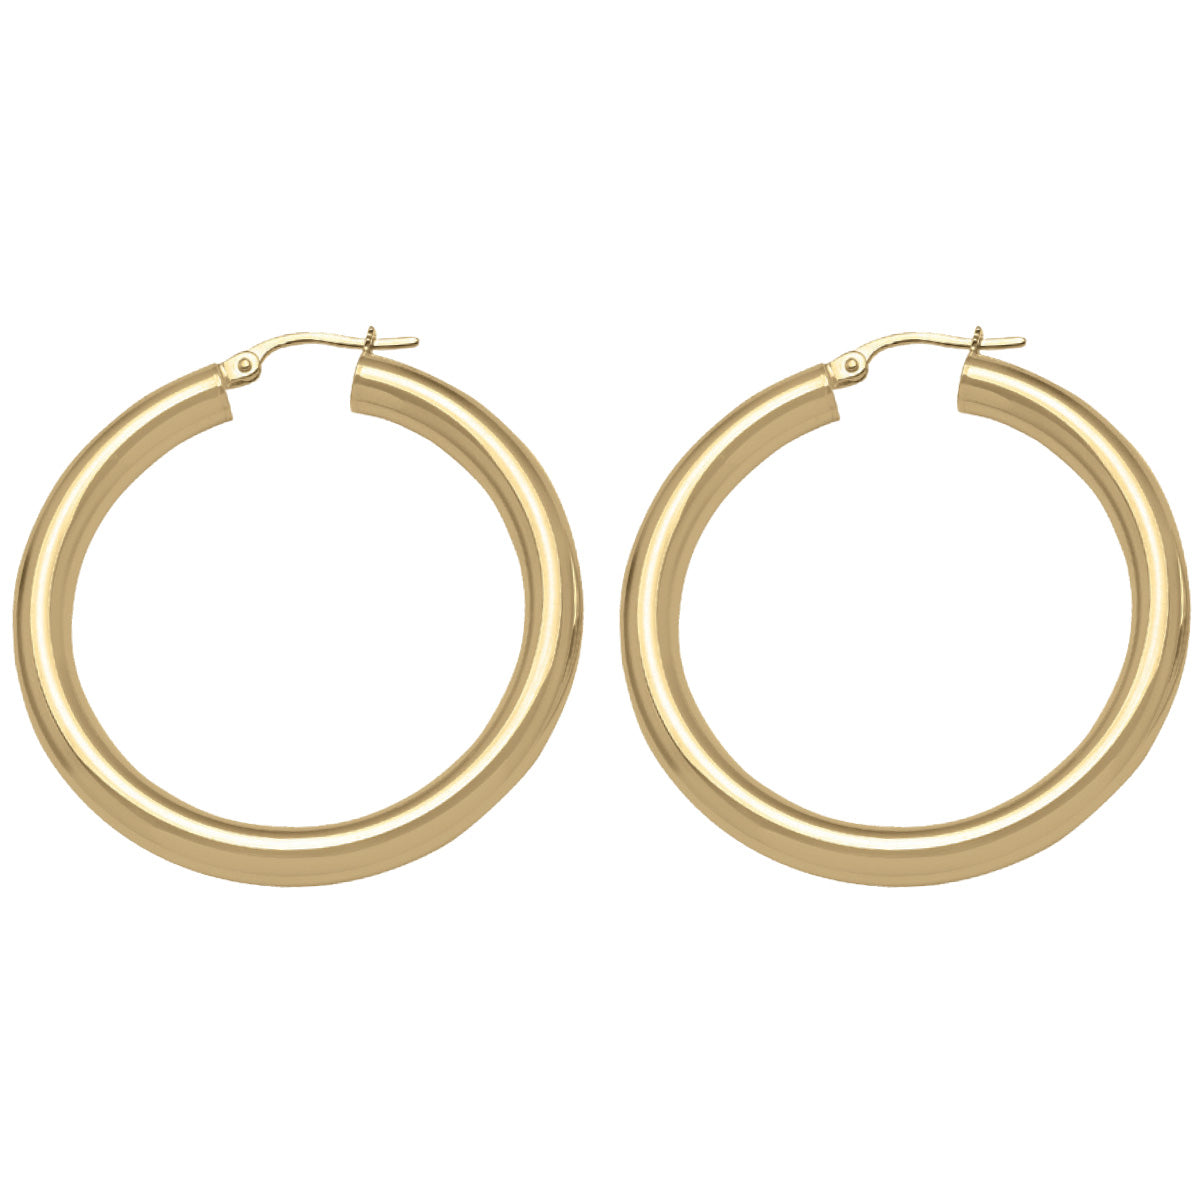 EH0201,  Gold Earrings, Hoops, 4 mm Tubing